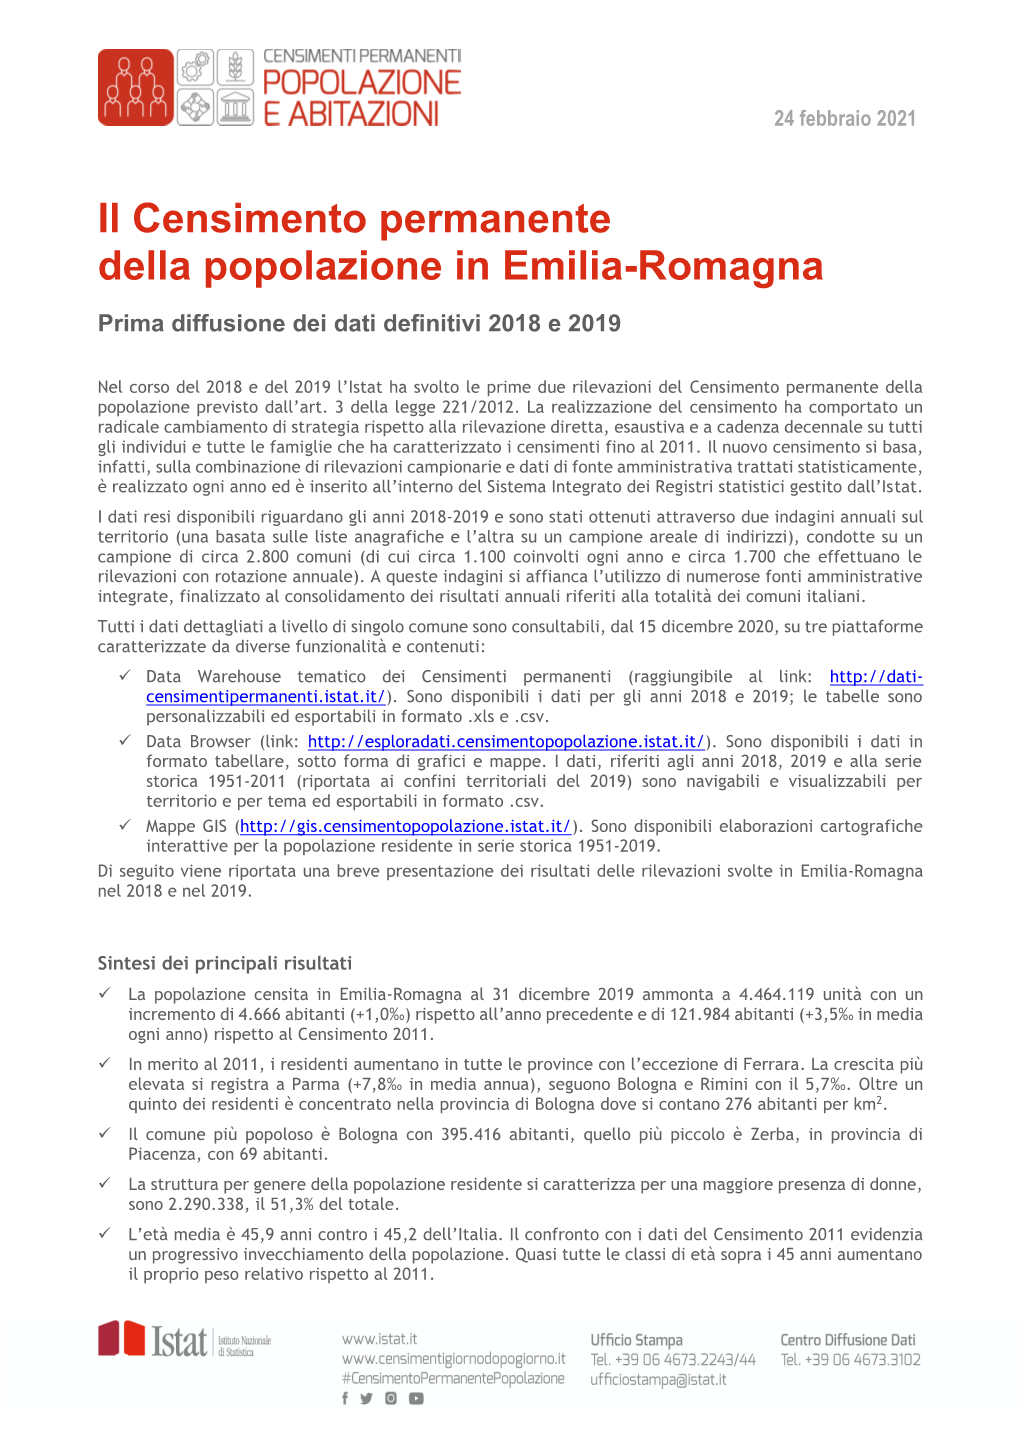 Il Censimento Permanente Della Popolazione in Emilia-Romagna